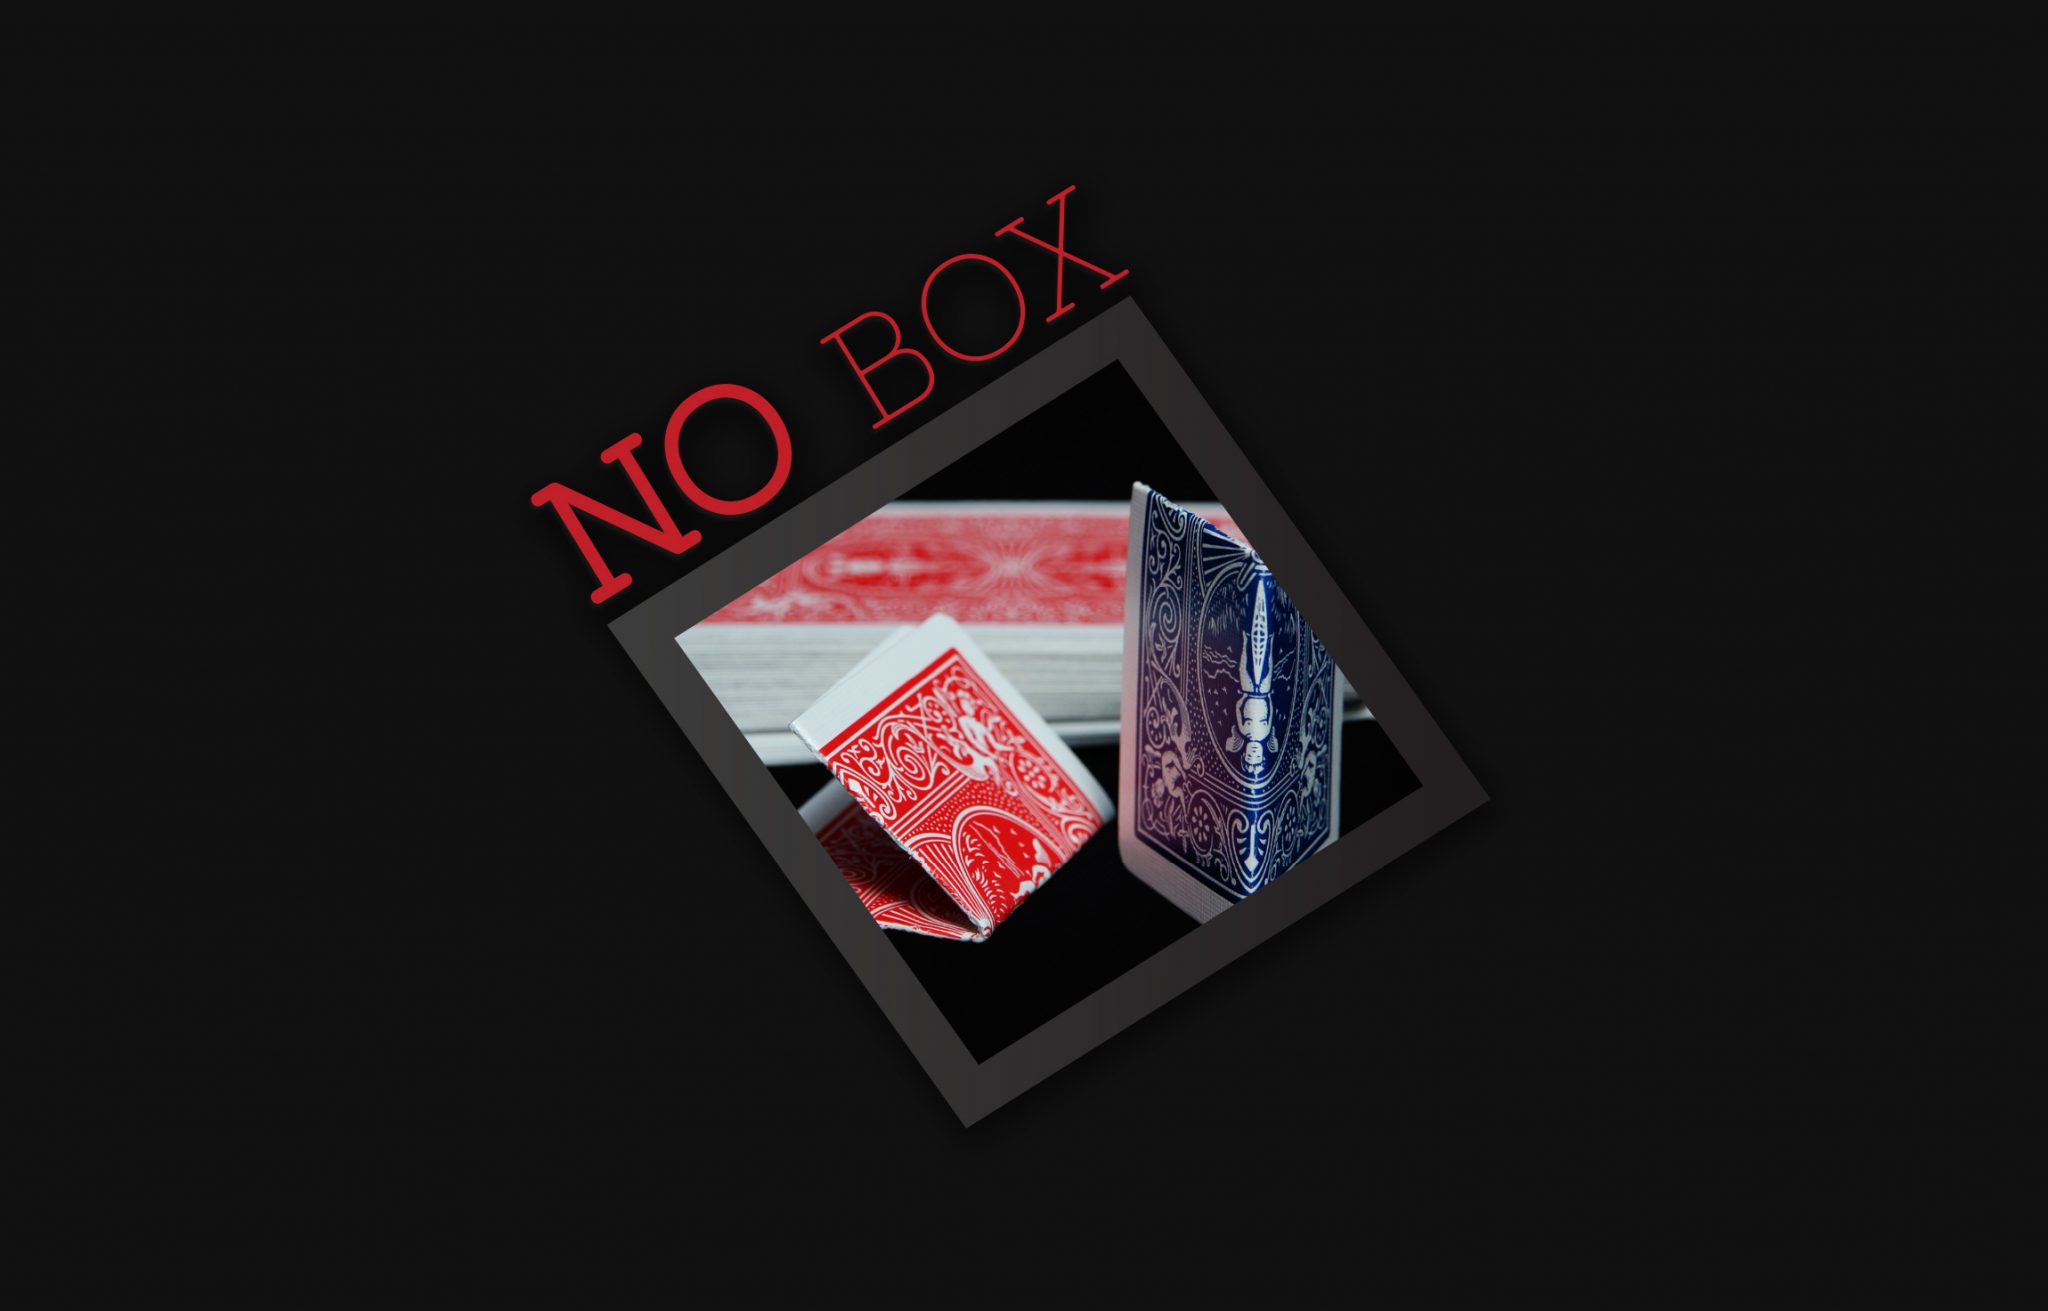 No Box